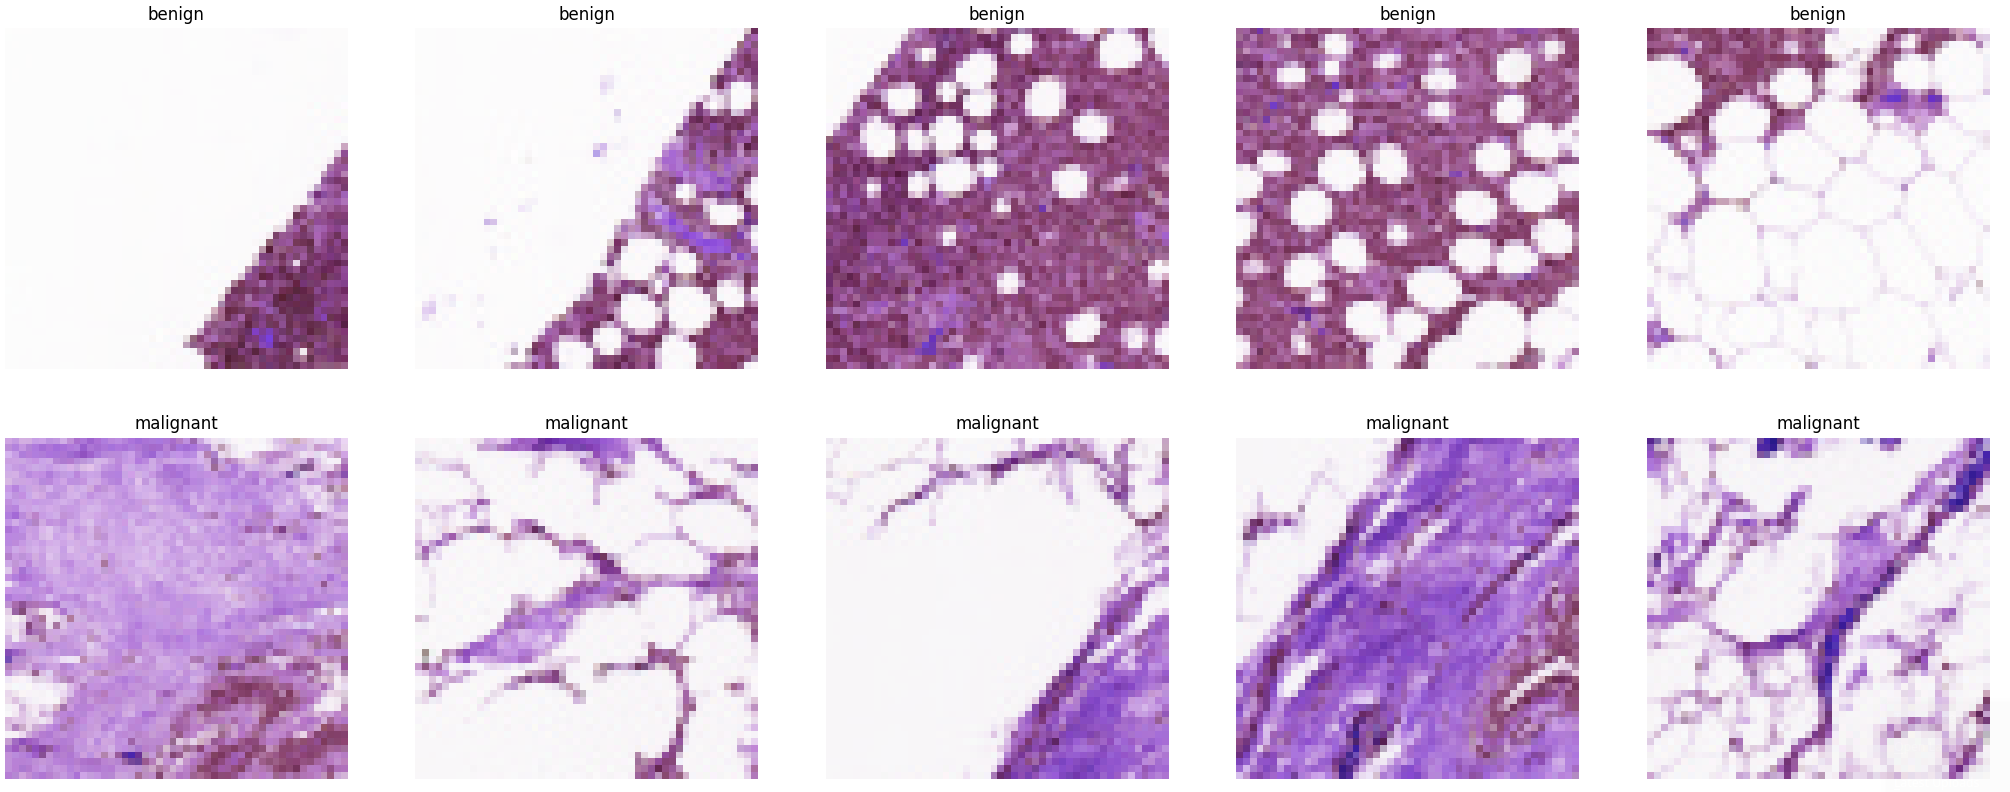 Breast Histopathology Image Segmentation